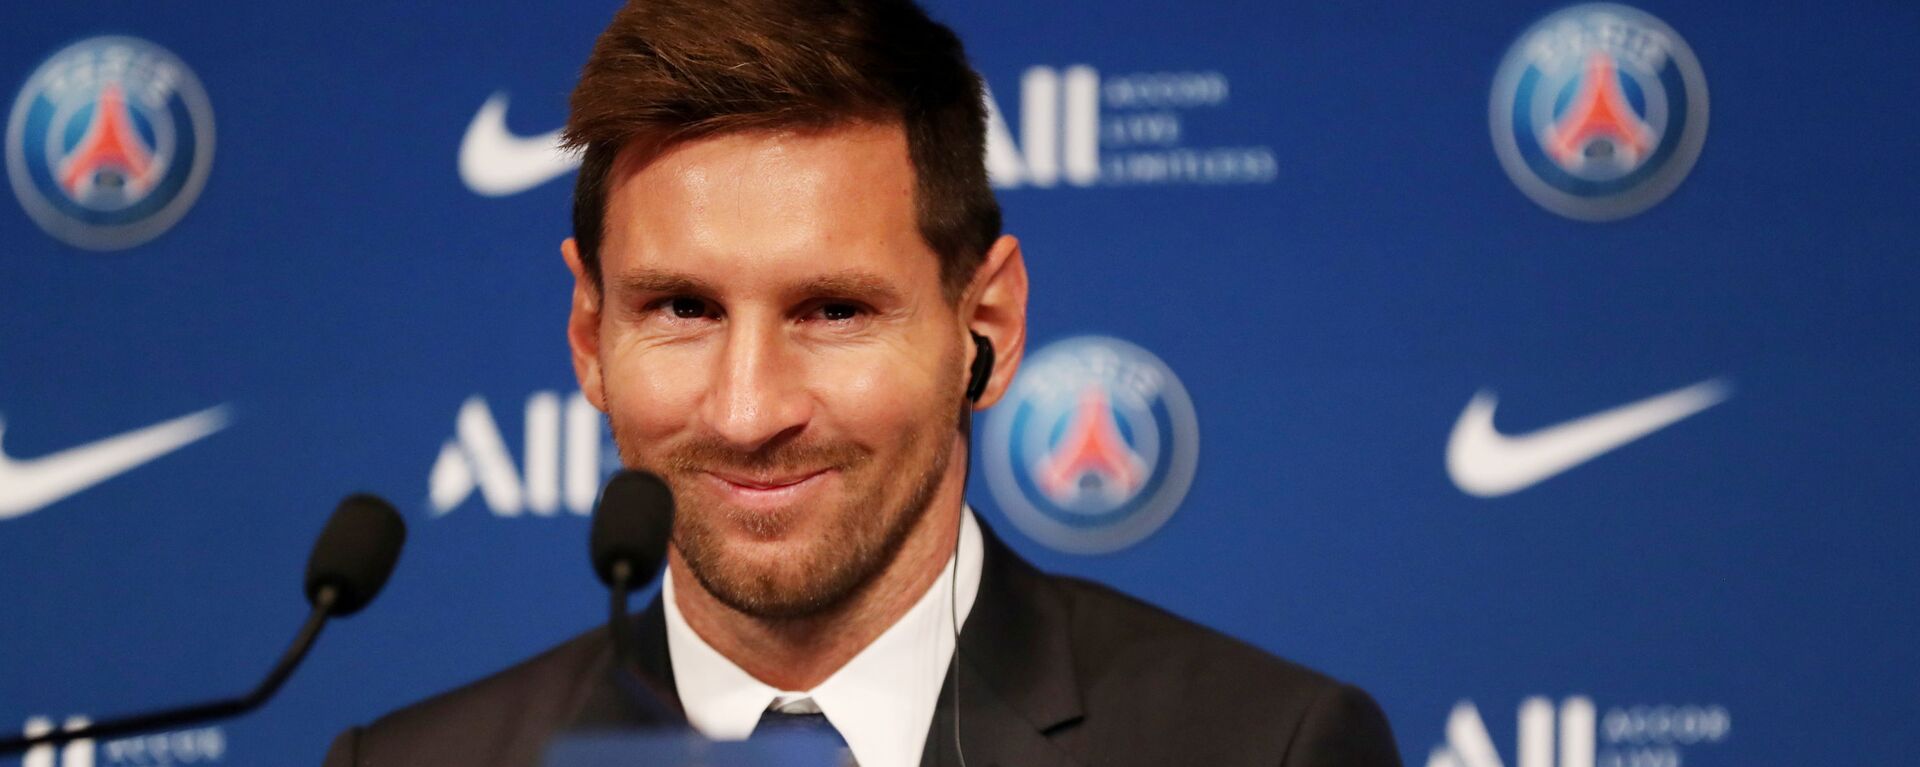 Lionel Messi trong cuộc họp báo sau khi ký hợp đồng với PSG, Paris, Pháp - Sputnik Việt Nam, 1920, 10.10.2021